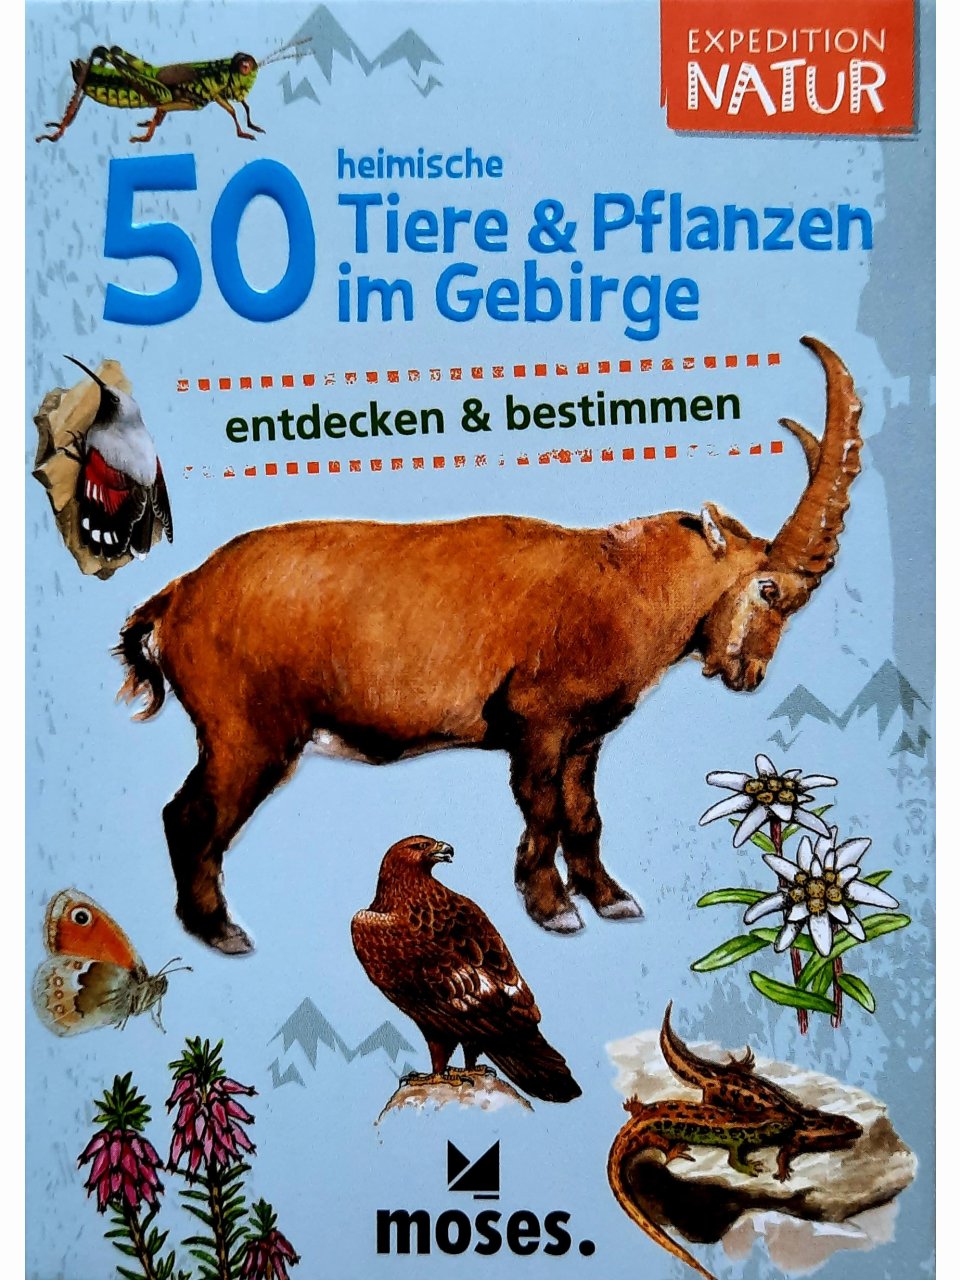 50 heimische Tiere & Pflanzen im Gebirge entdecken & bestimmen